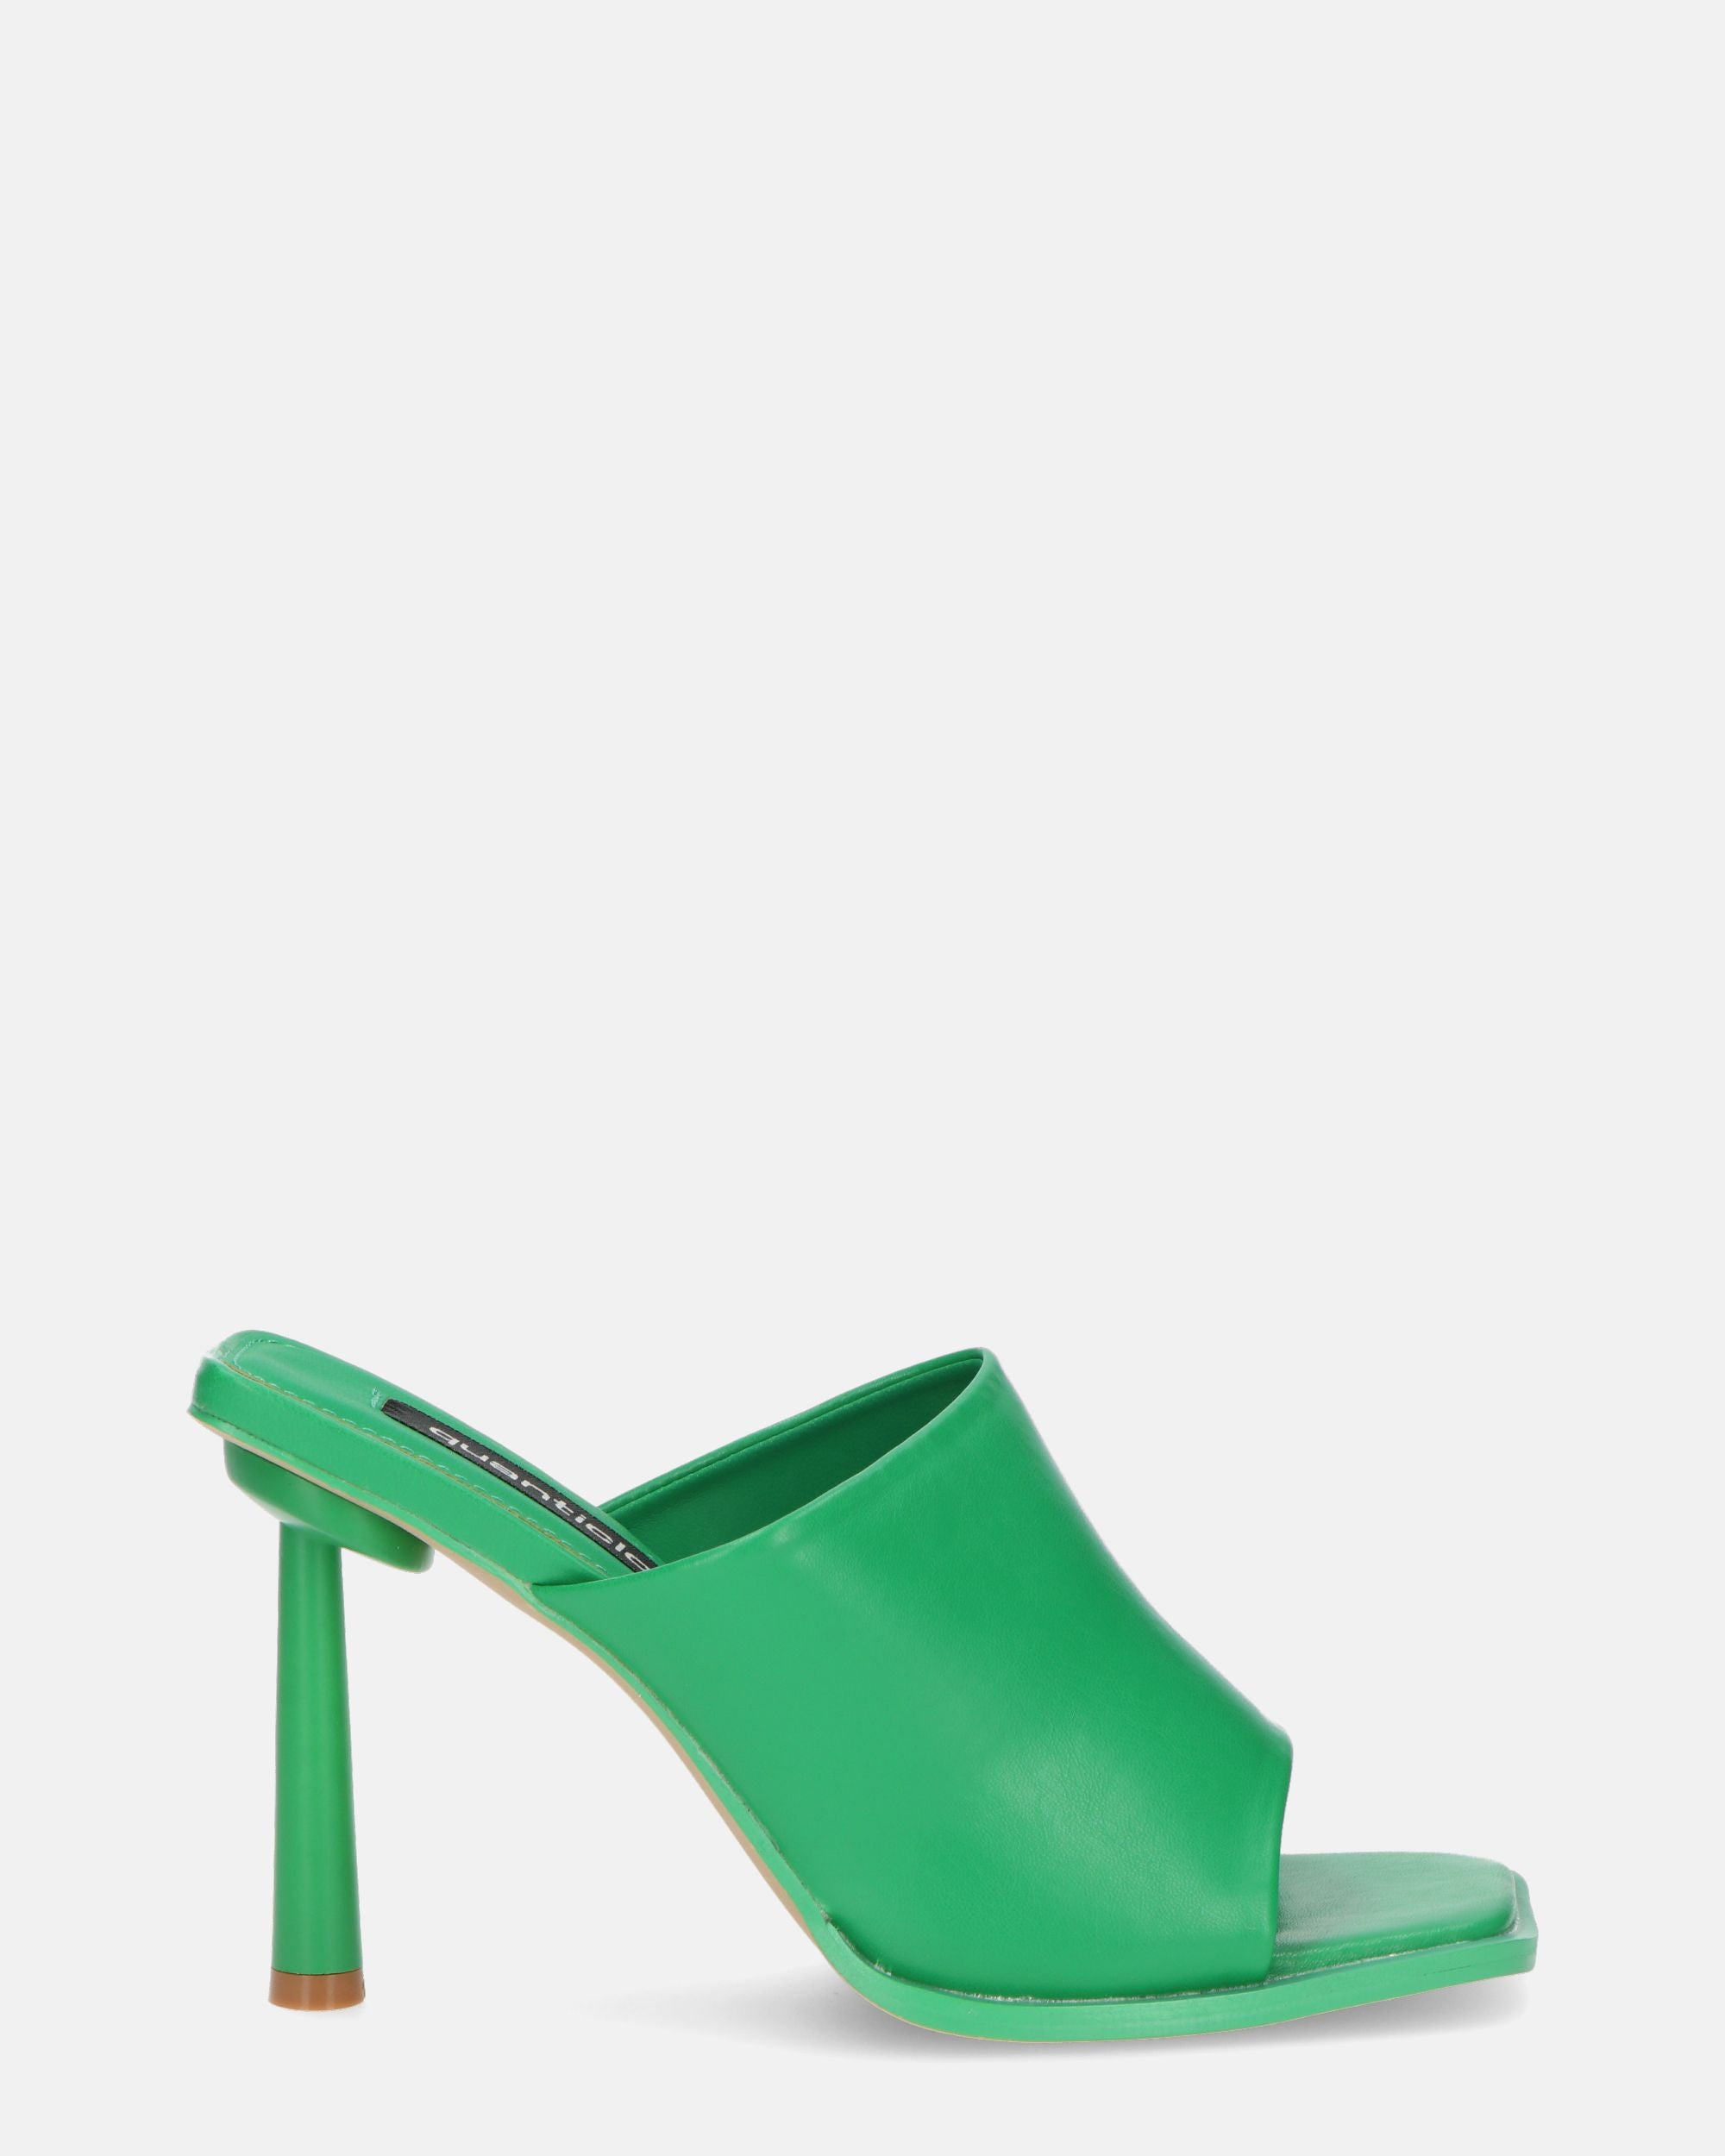 MIRANDA - zapatos verdes con tacones de aguja